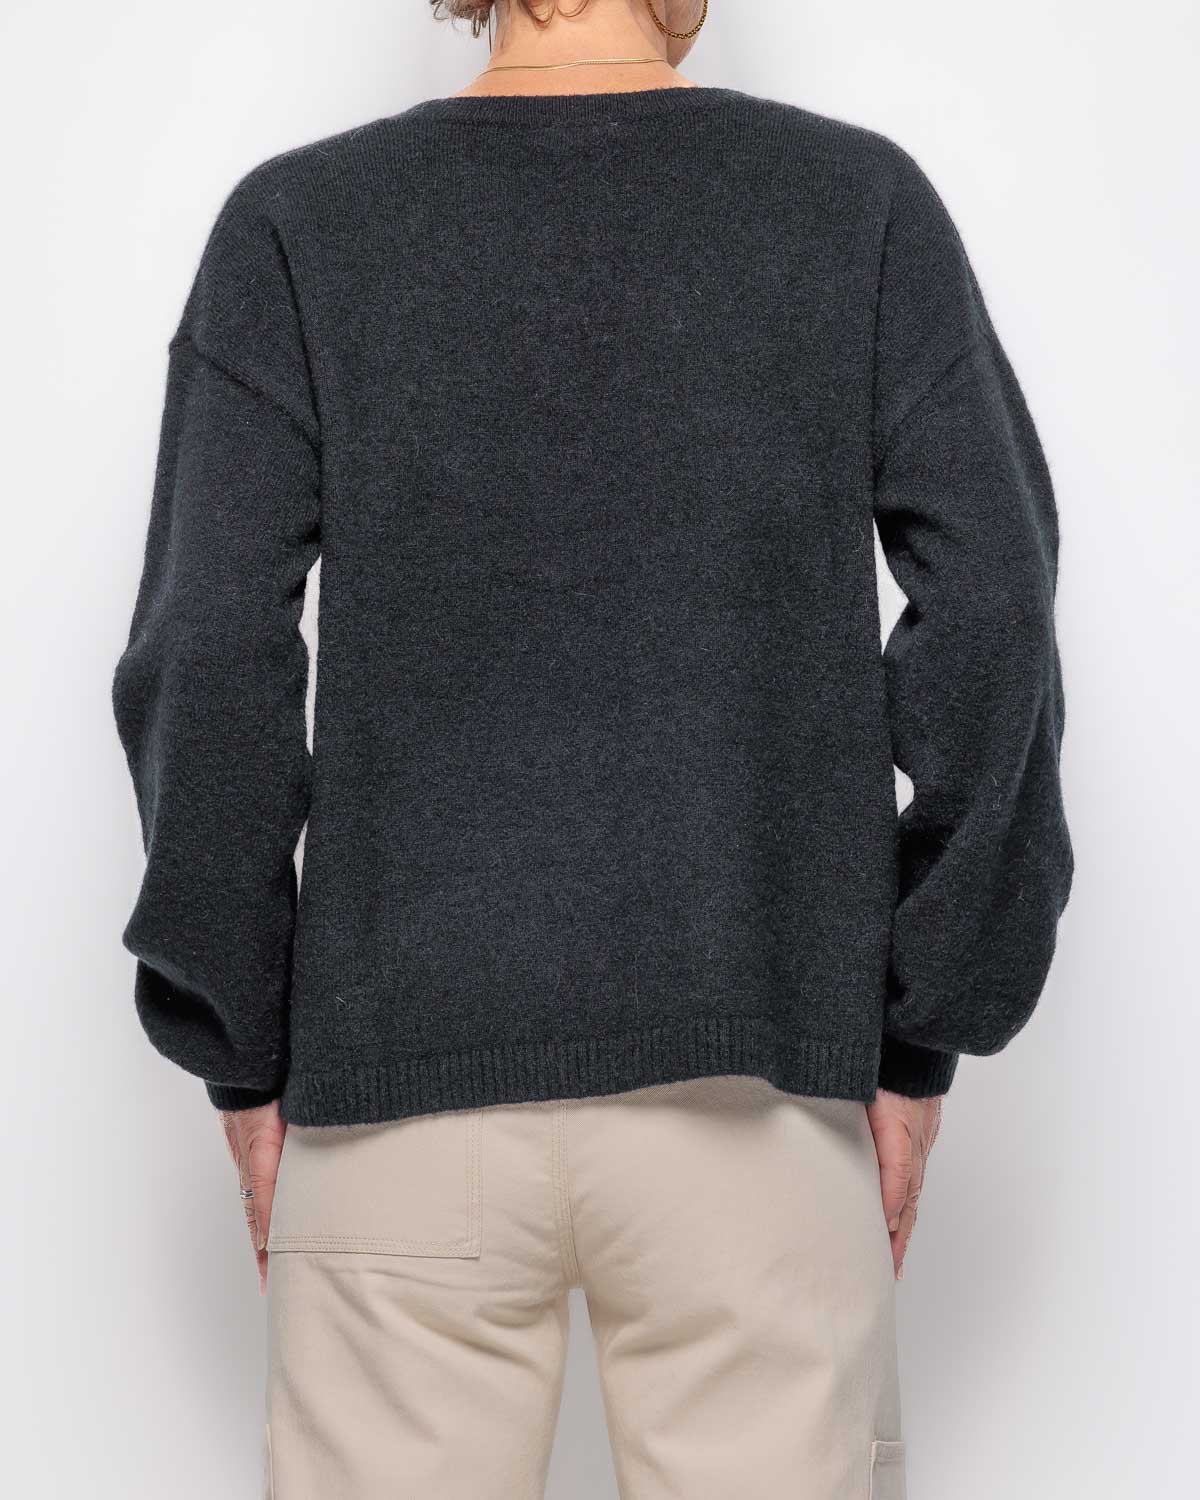 FIVE Pull Sweater in Noir